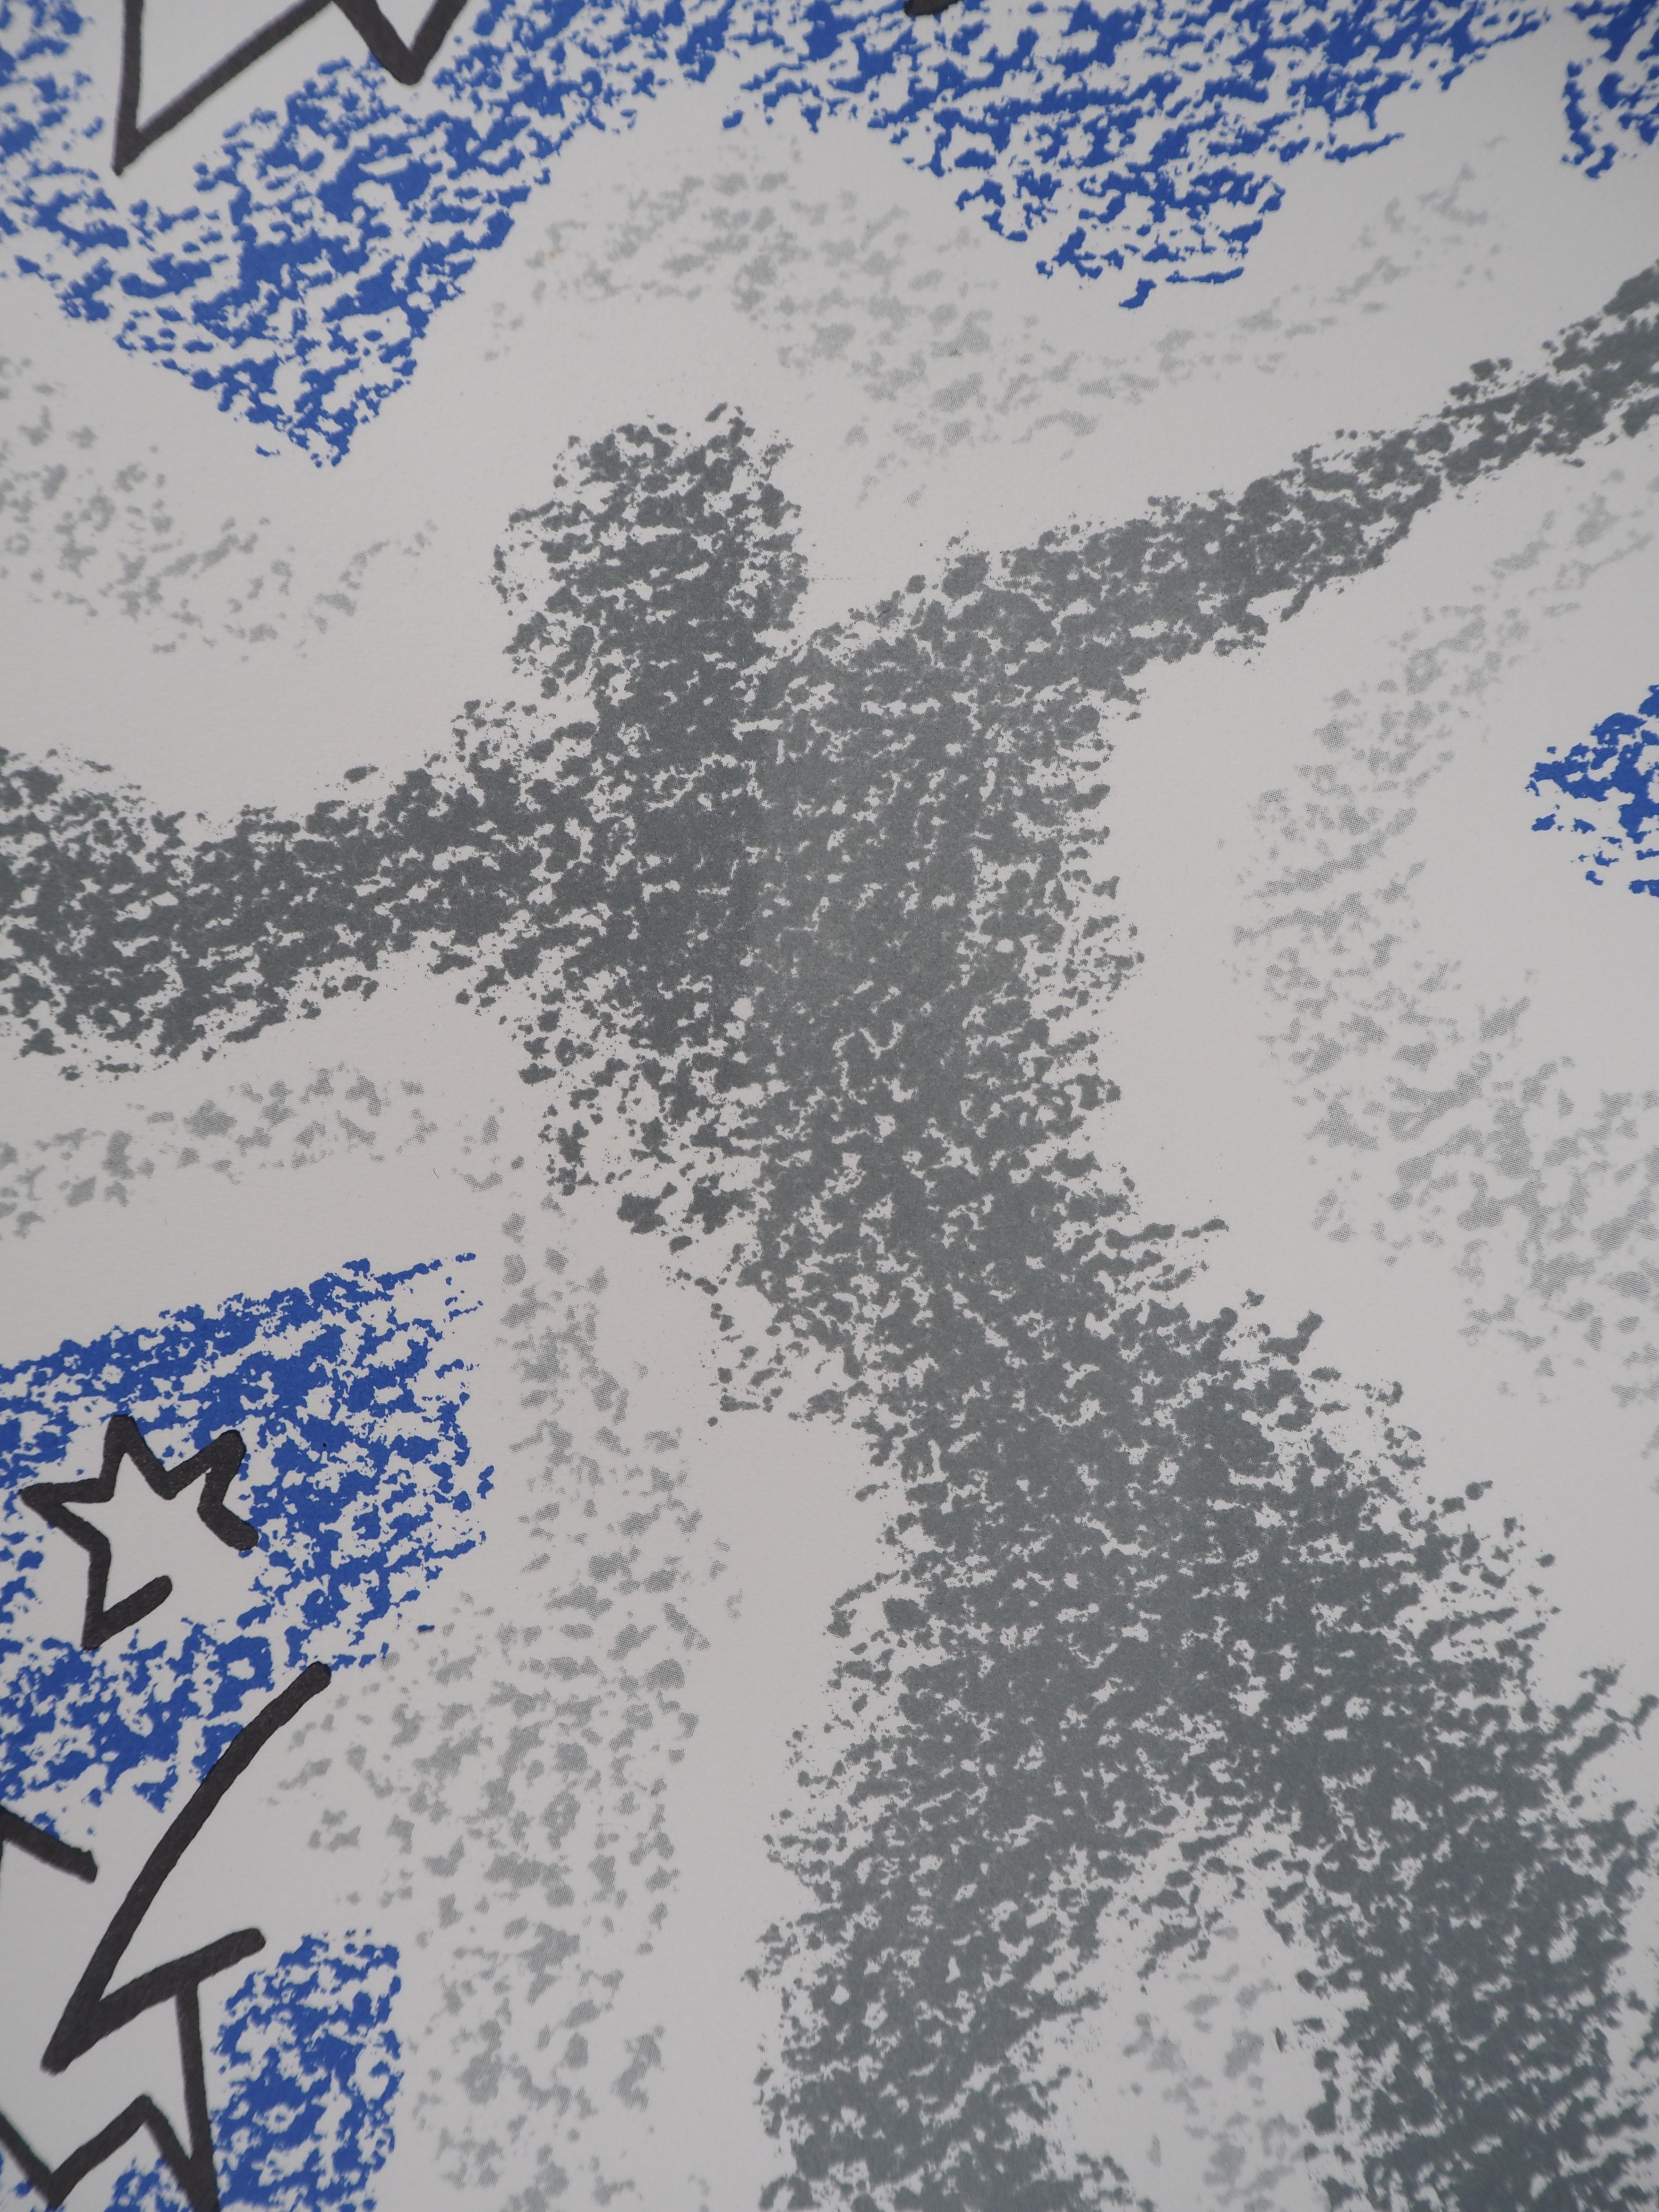 Andre MASSON
Tanzen unter den Sternen, 1973

Original-Lithographie
Signiert mit dem Stempel des Künstlers
Nummeriert / 100
Auf Vellum 58 x 38 cm (ca. 23 x 15 Zoll)

Sehr guter Zustand, kleine Mängel am Rand des Blattes